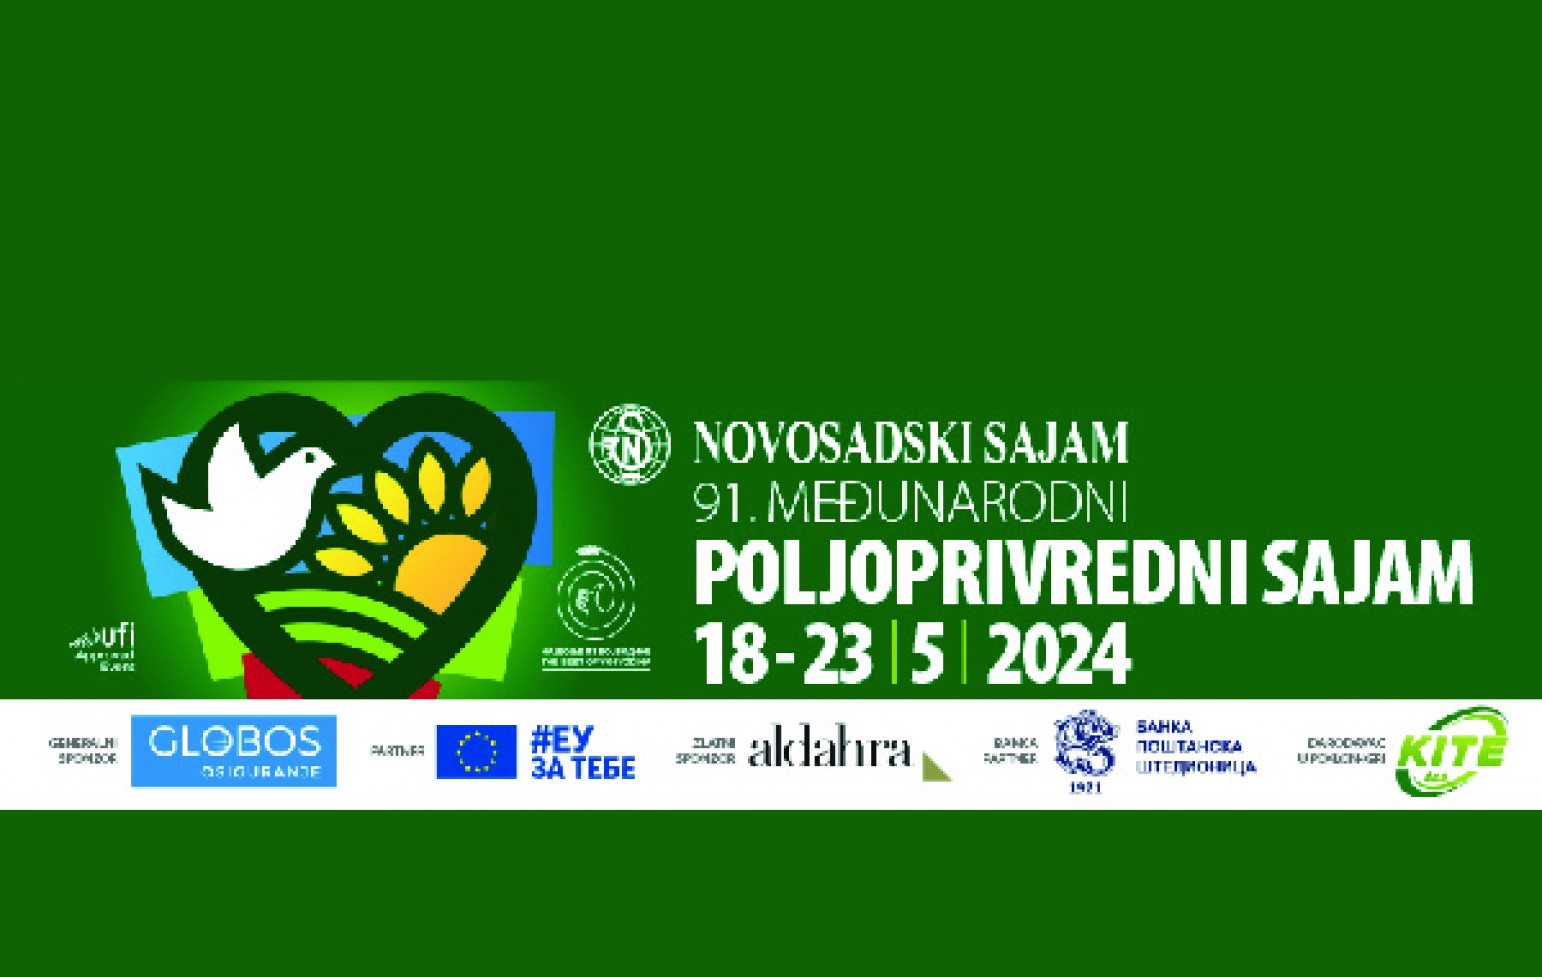 Presentes en la Feria NOVOSADSKI SAJAM 2024